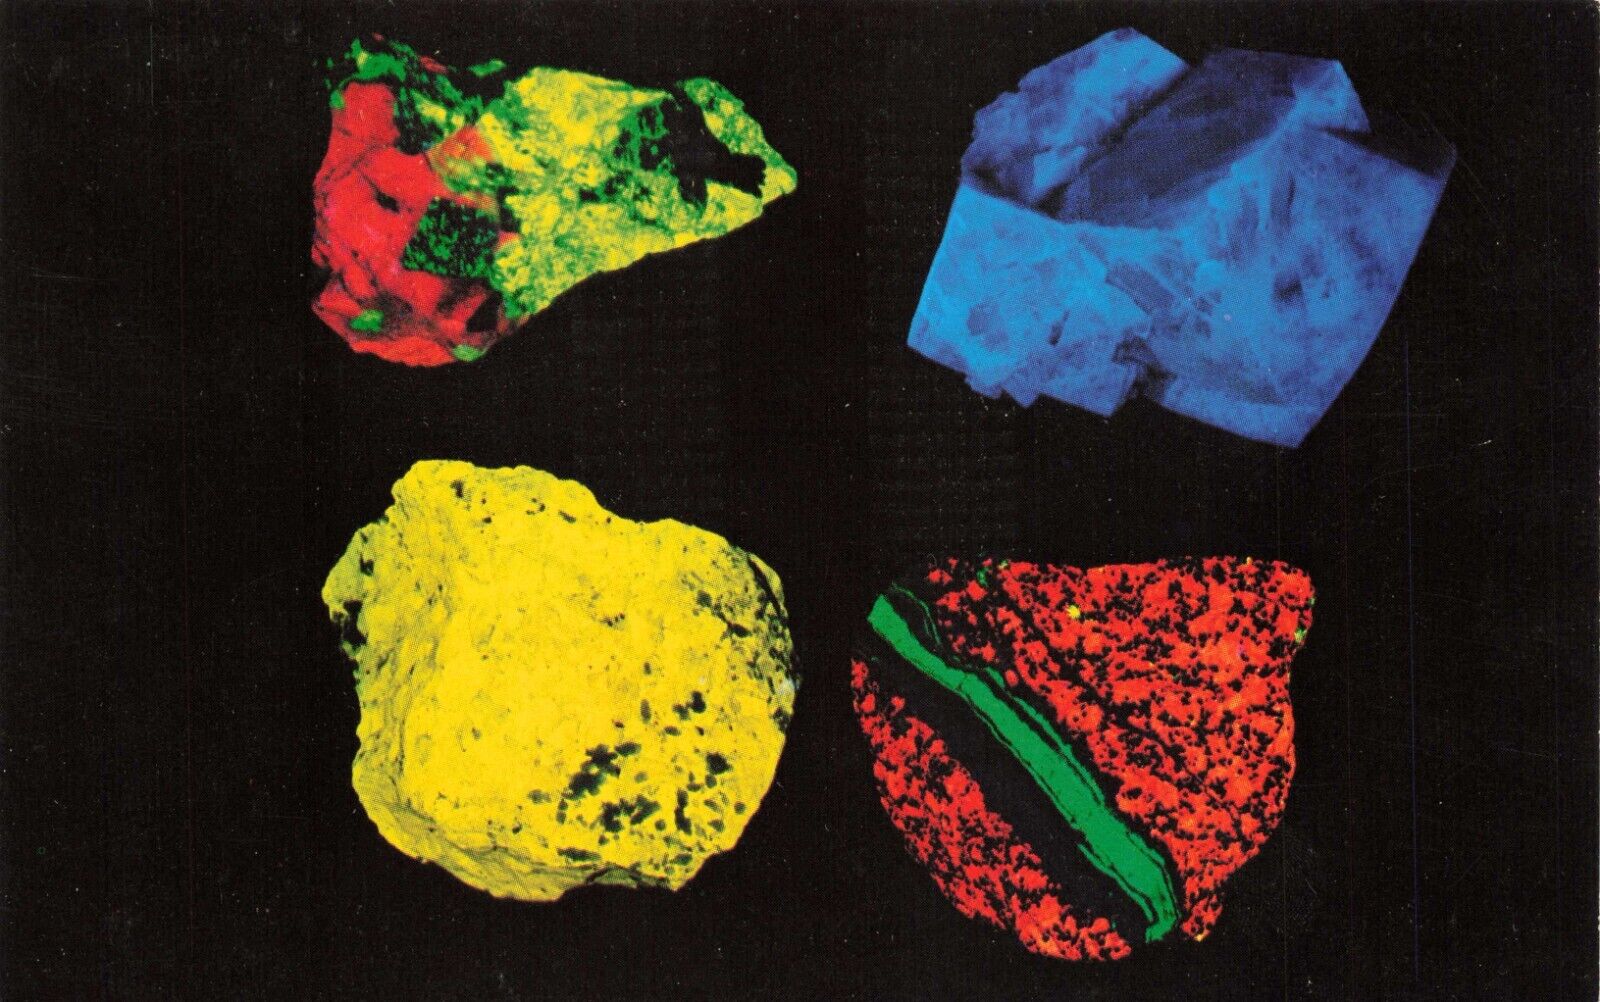 Postcard Fluorescent Minerals under \